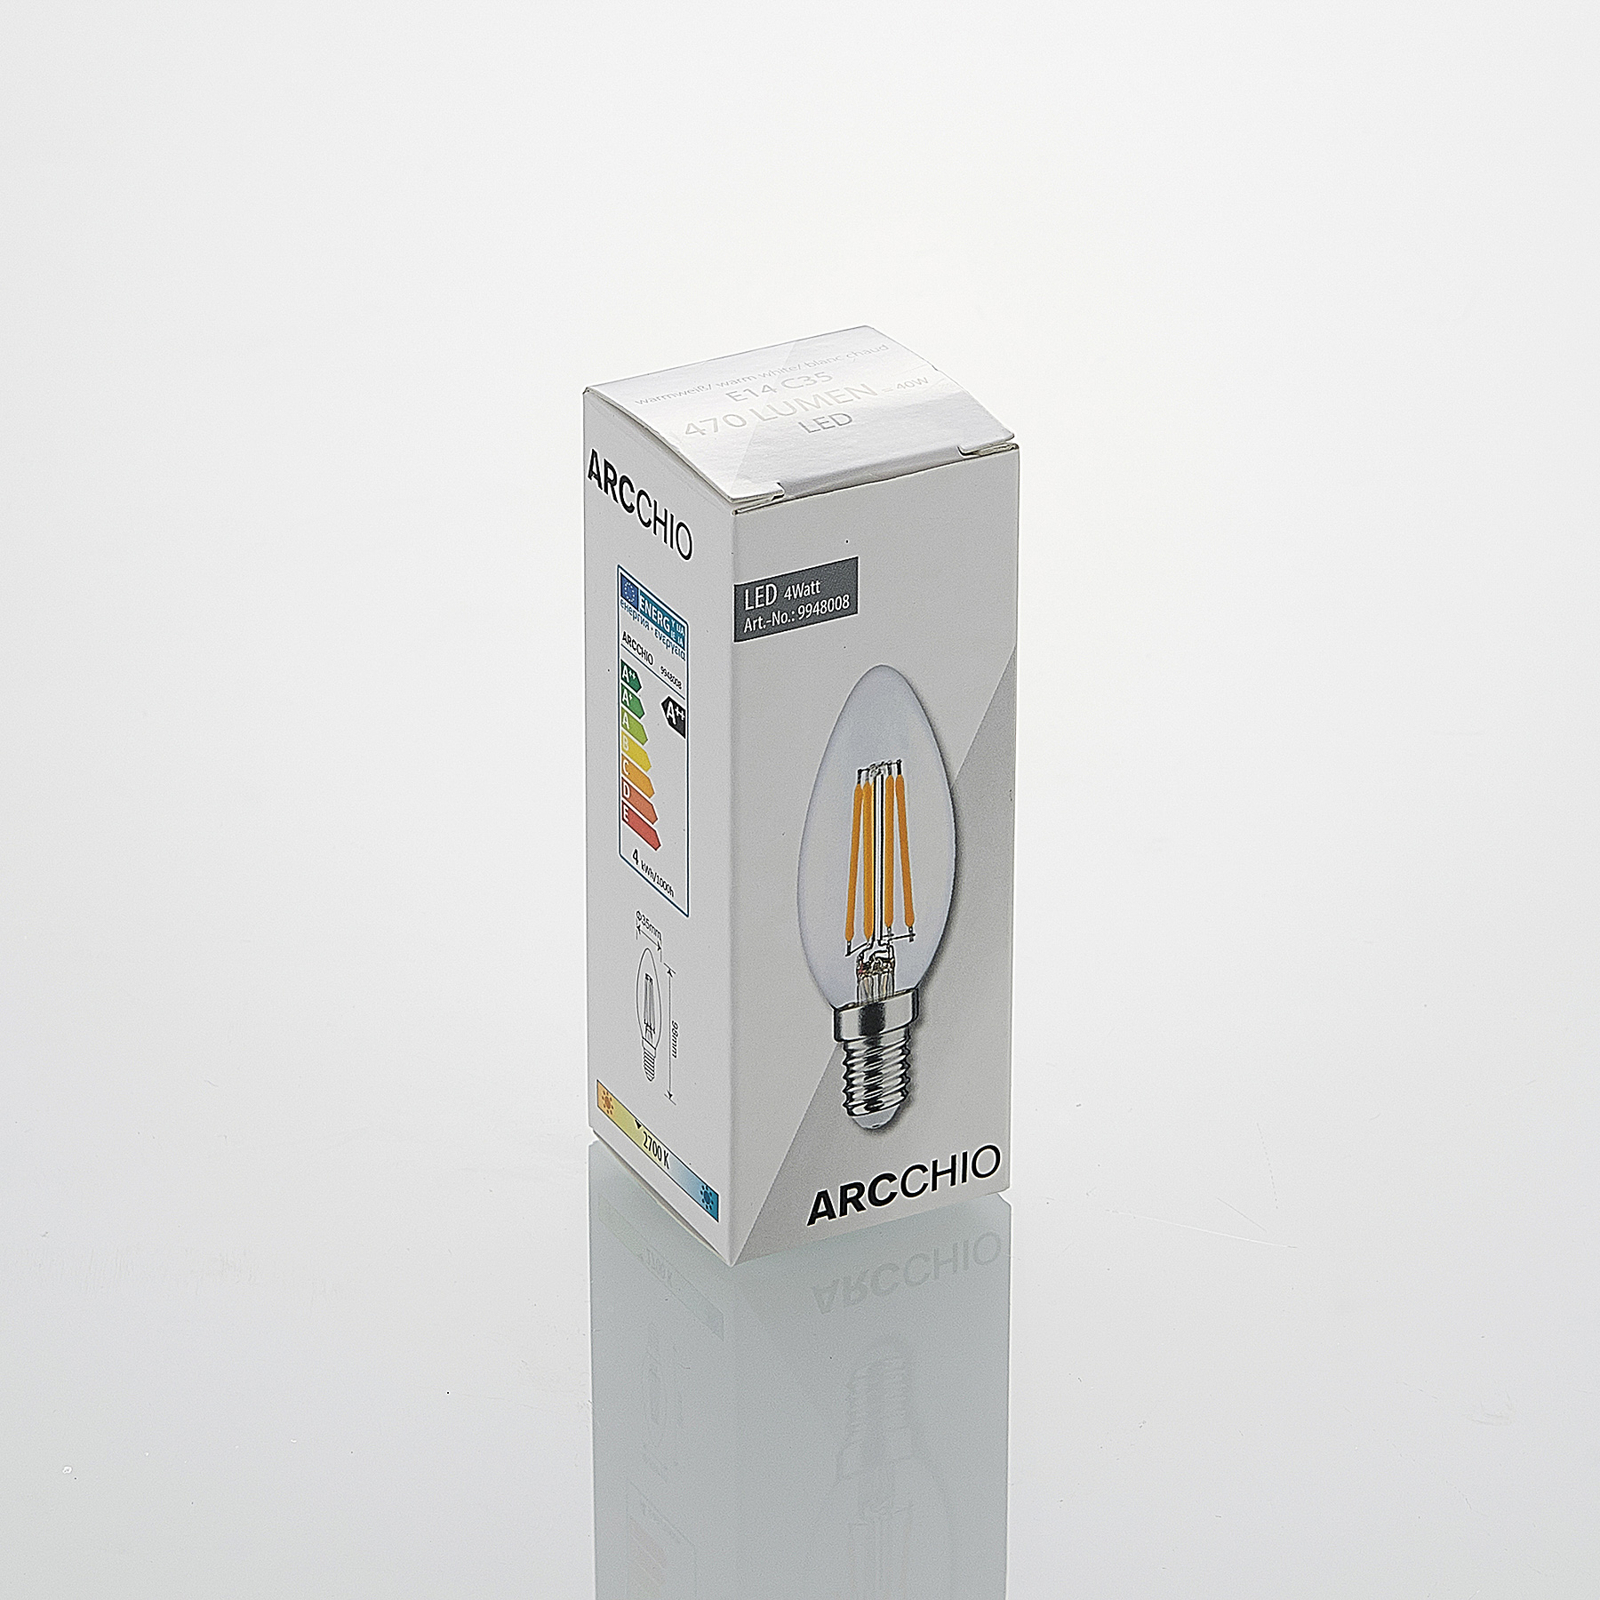 Conjunto de 3 lâmpadas de incandescência LED E14 4W 827 com regulação de